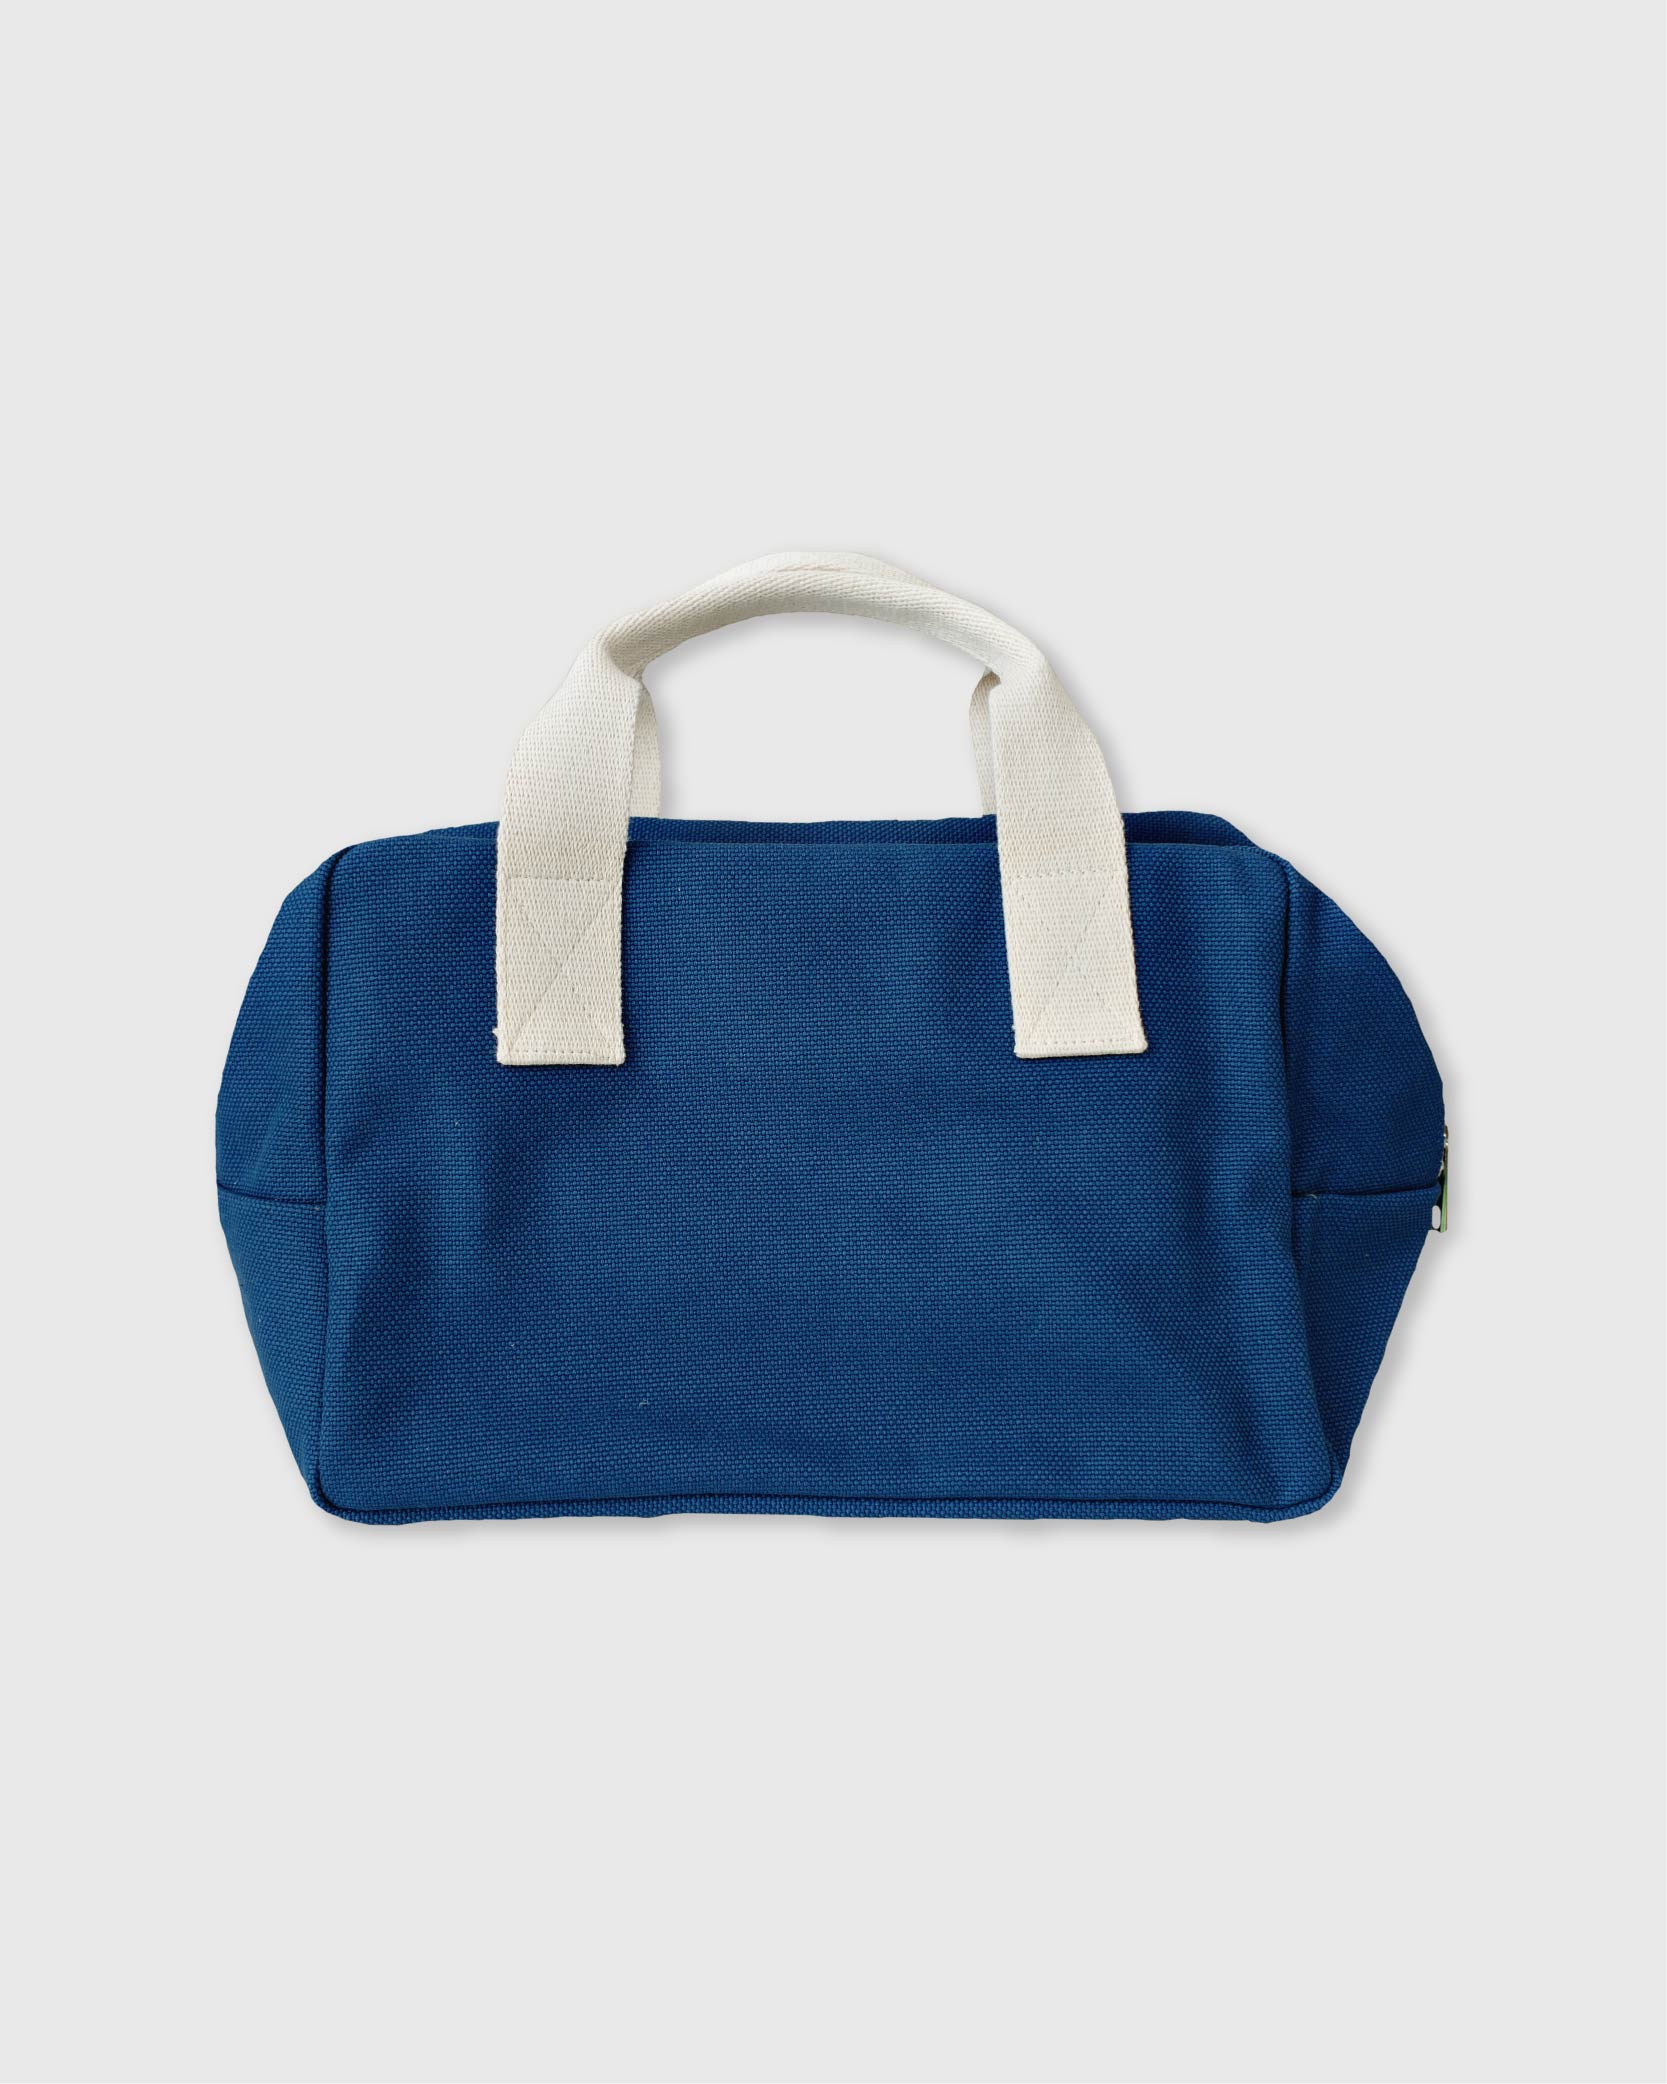 언폴드,unfold,에코백,파우치,천가방,친환경가방,Boston bag (blue)